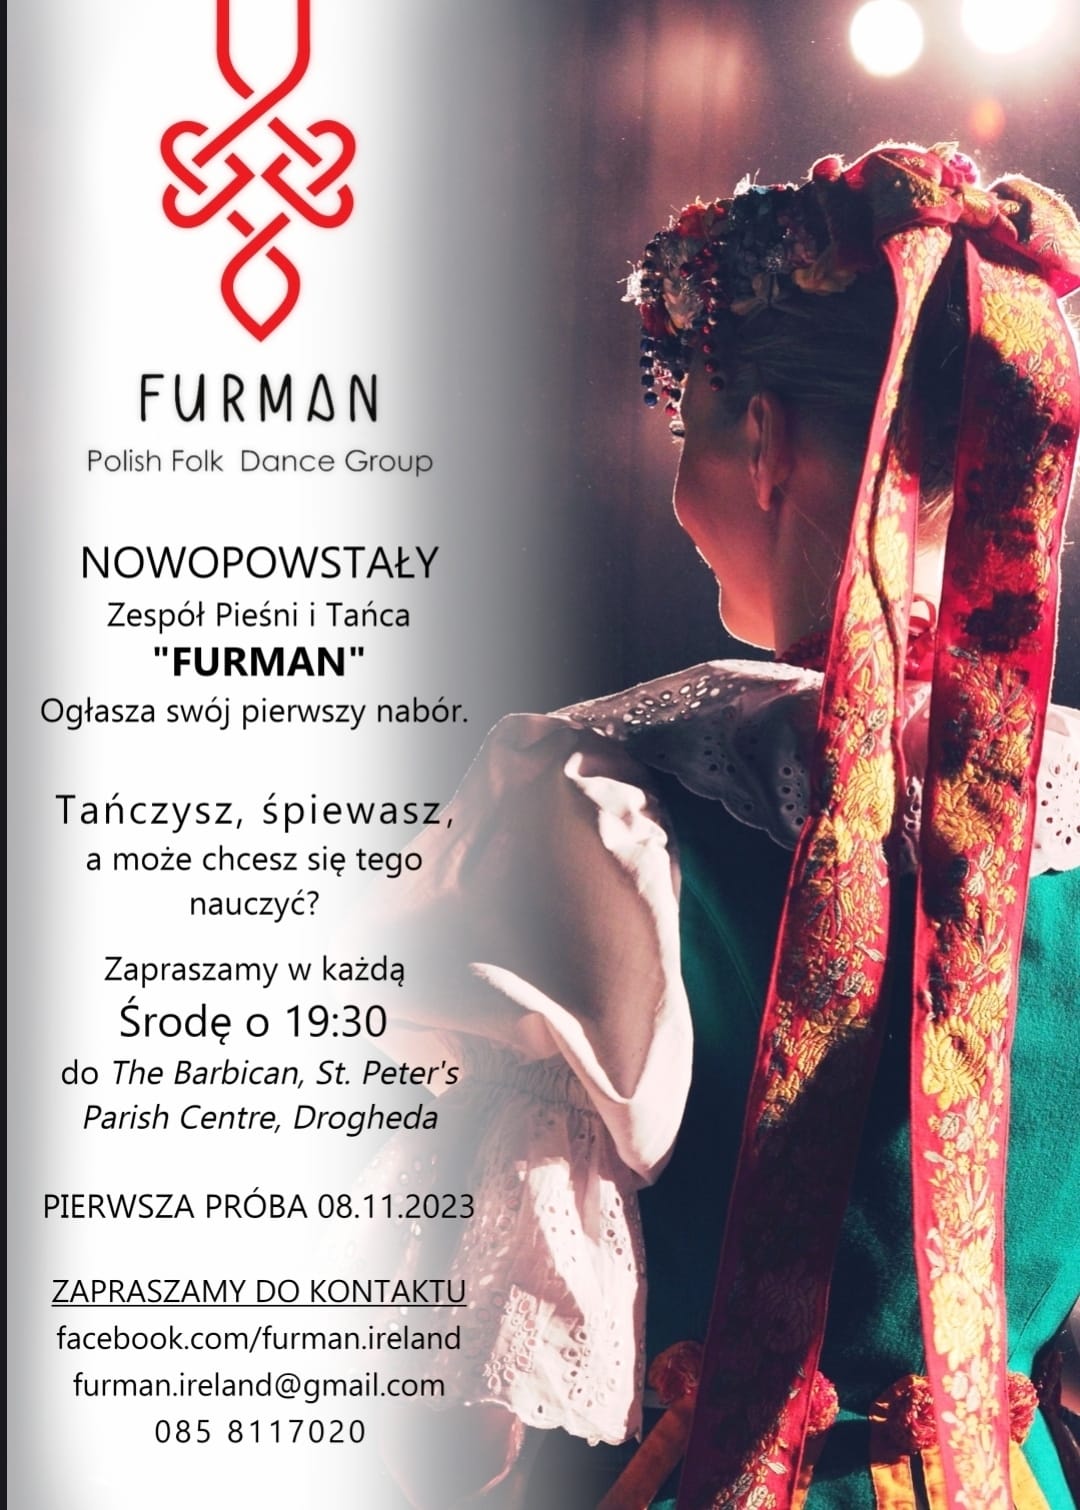 Furman Polish Folk Dance Group